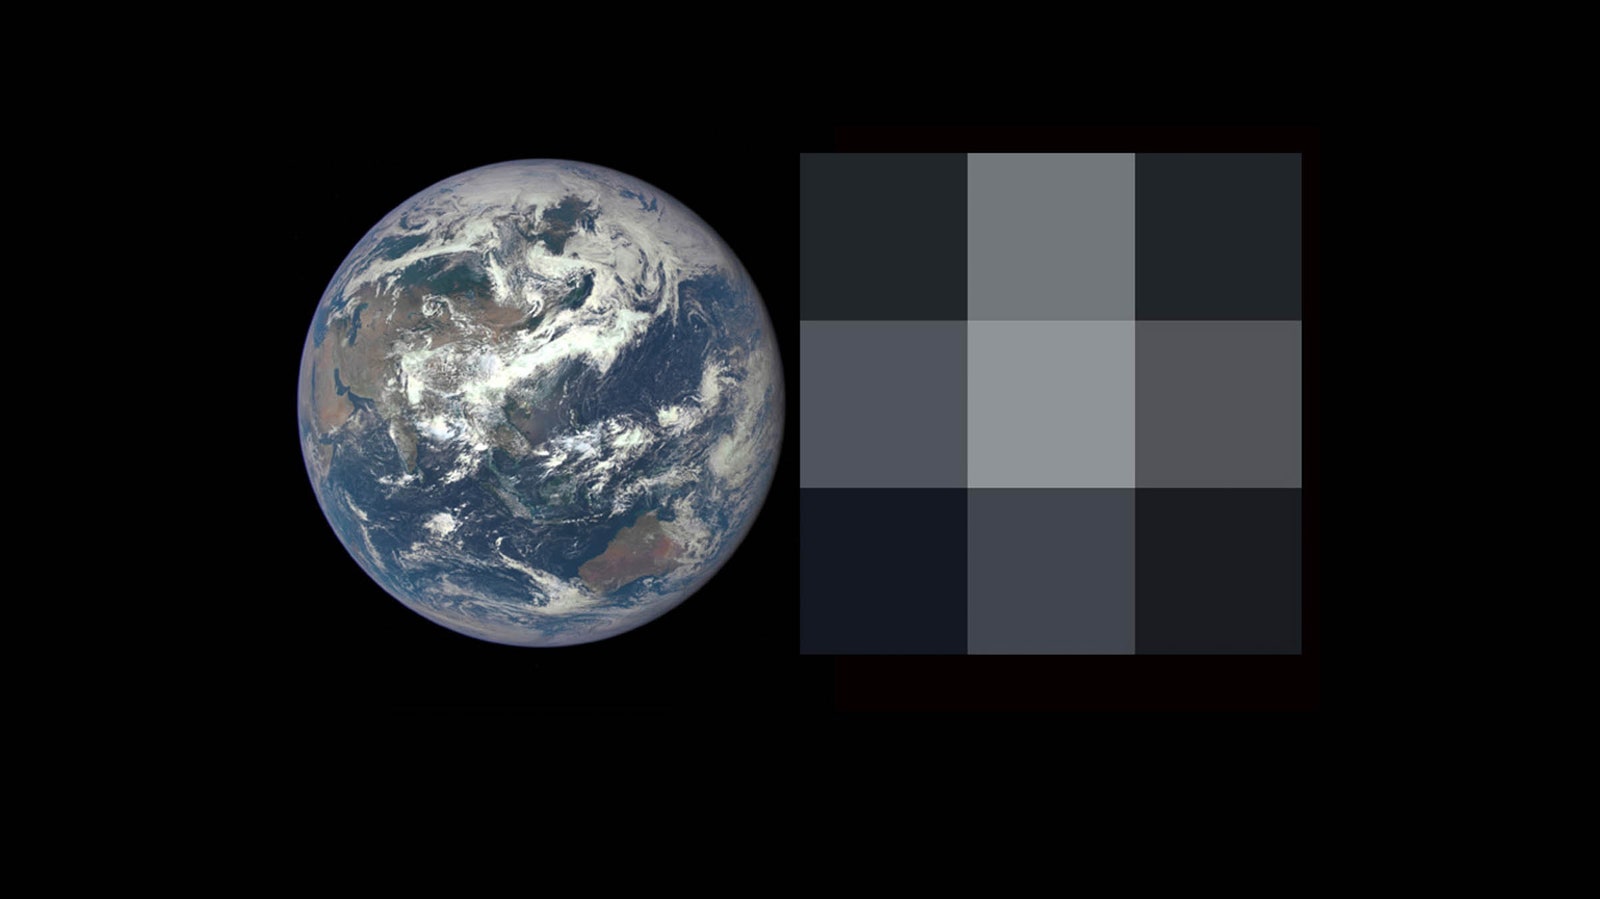 Una imagen de la Tierra junto a la misma imagen degradada a una resolución de 3x3 píxeles